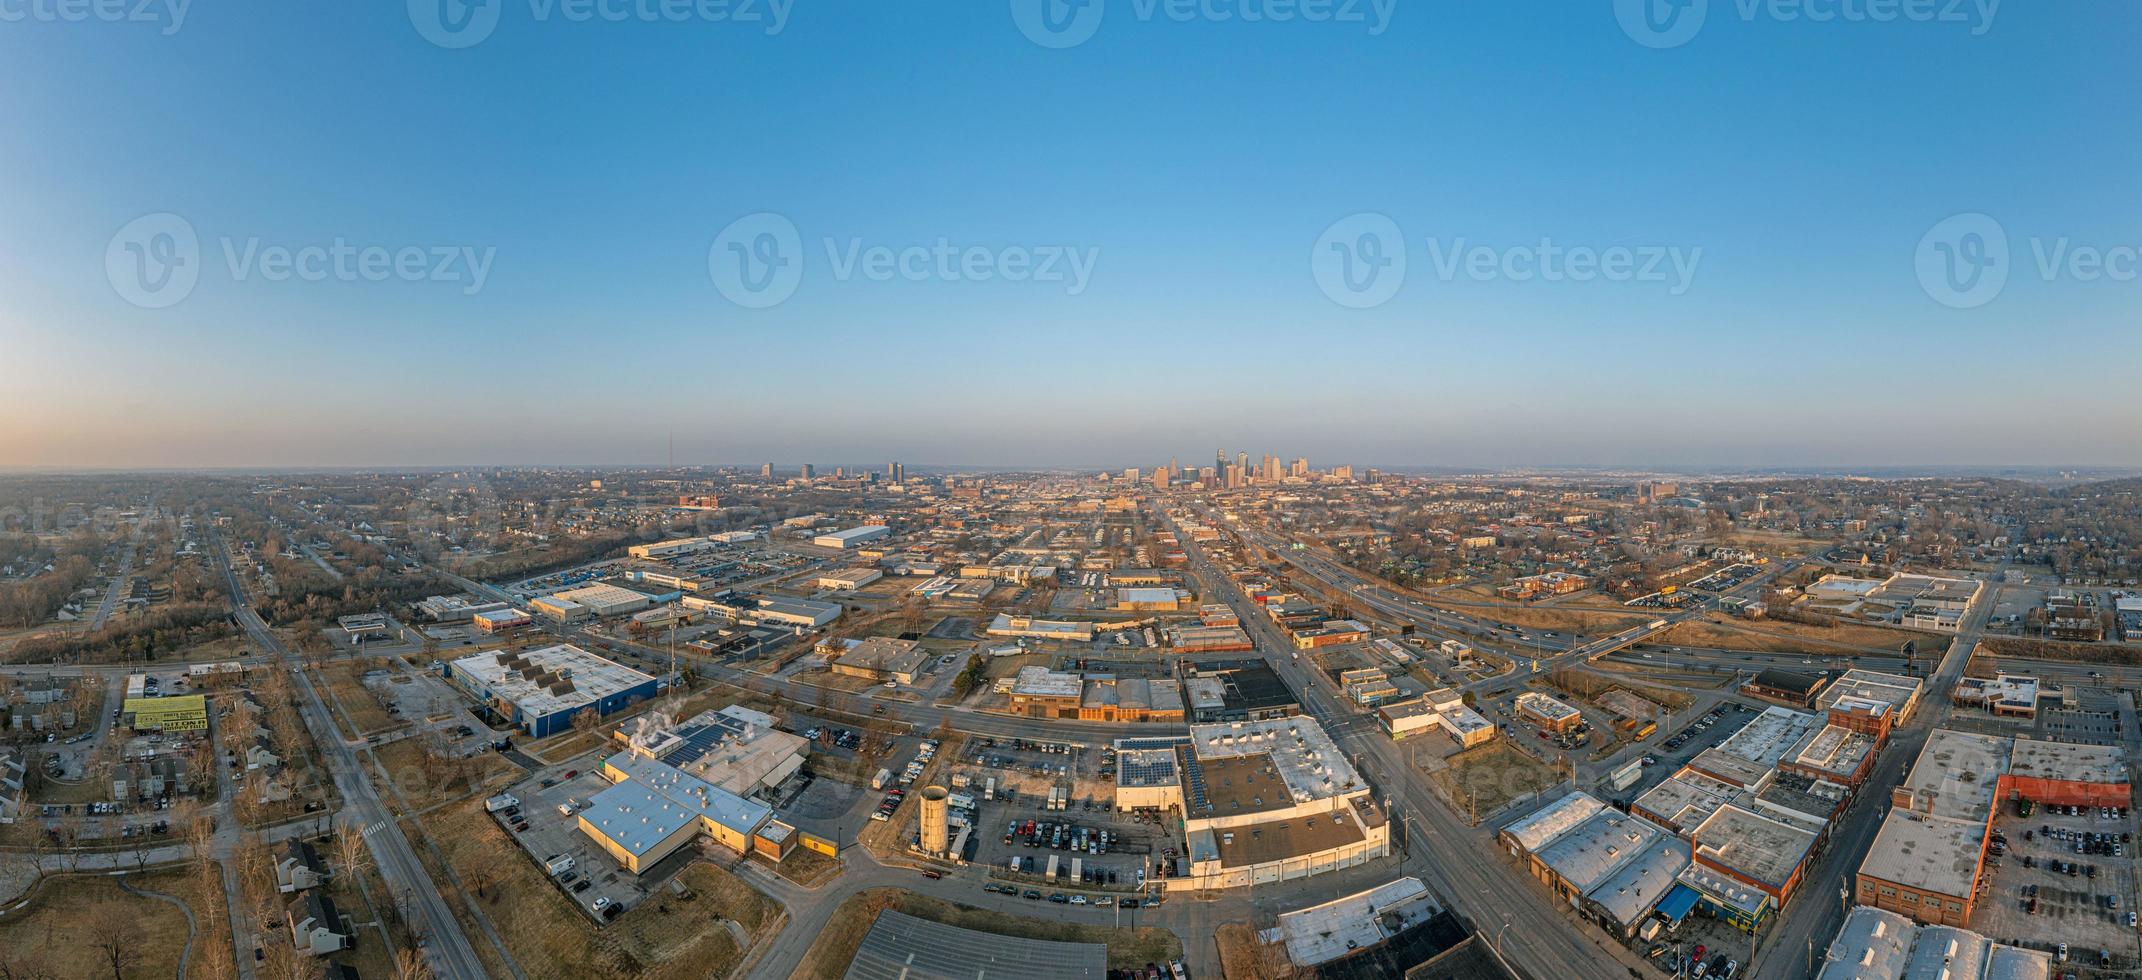 Drone panorama of Kansas City skyline during sunrise photo